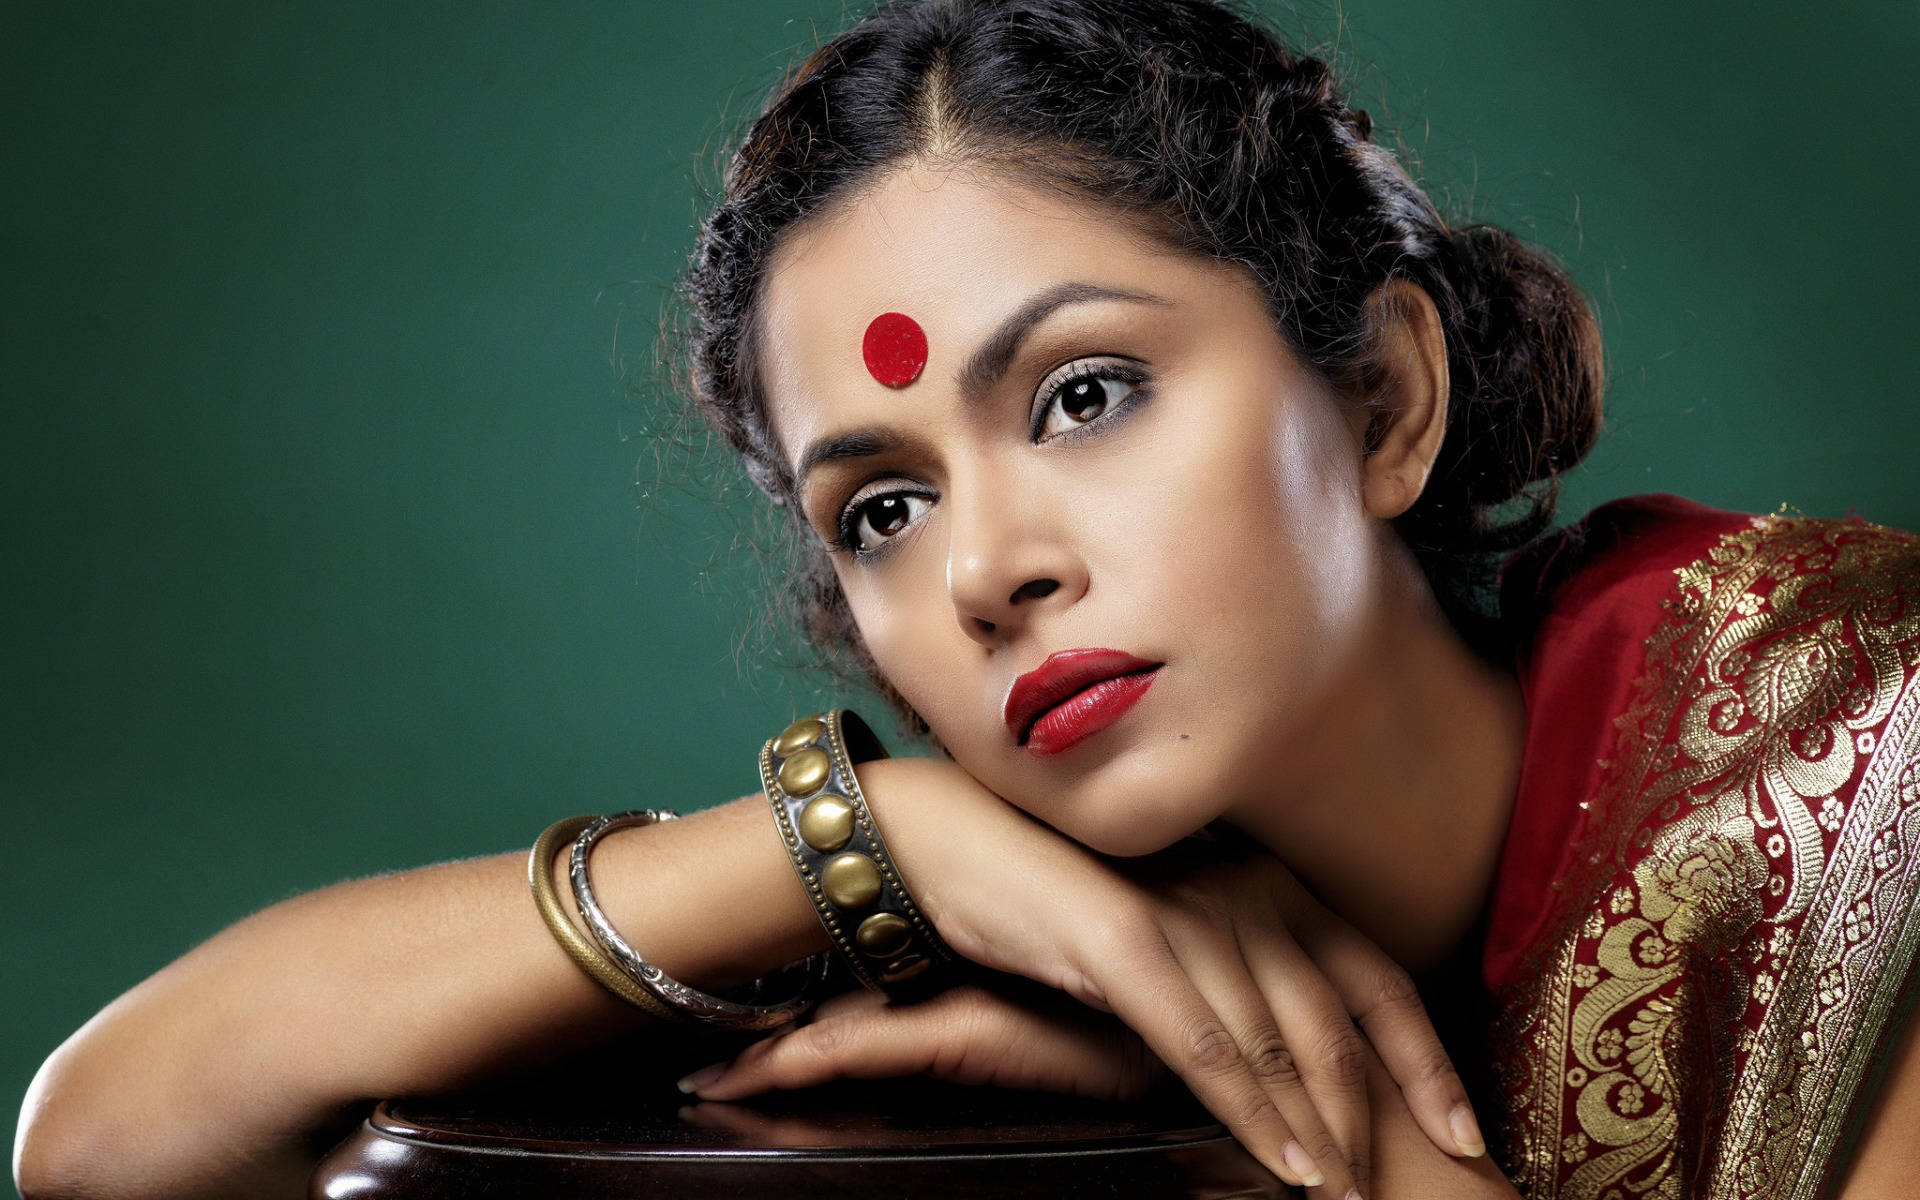 Indian Woman Bindi